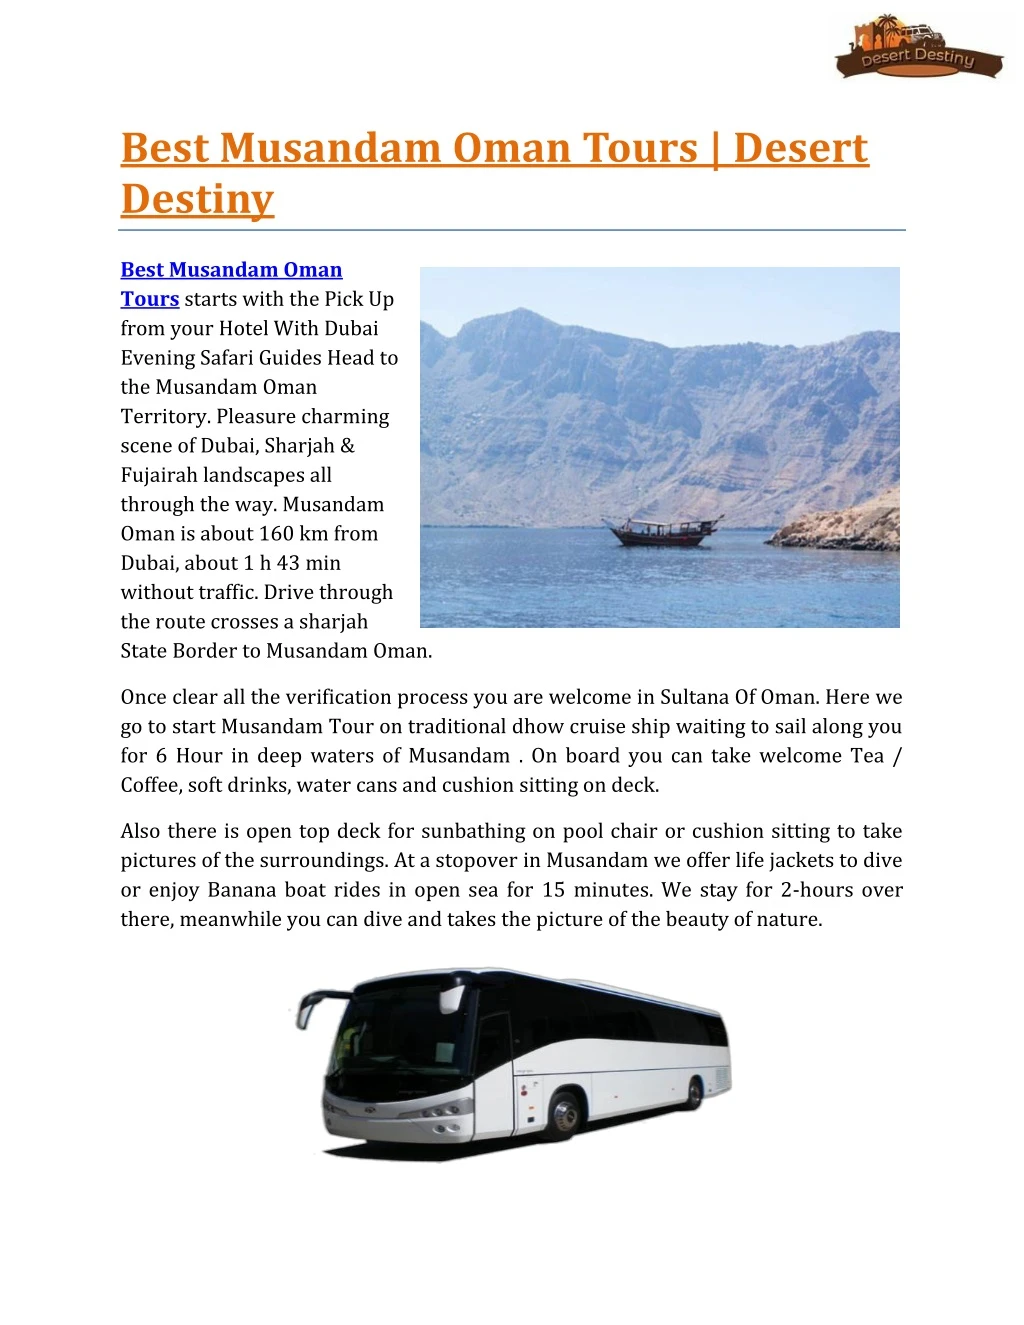 best musandam oman tours desert destiny